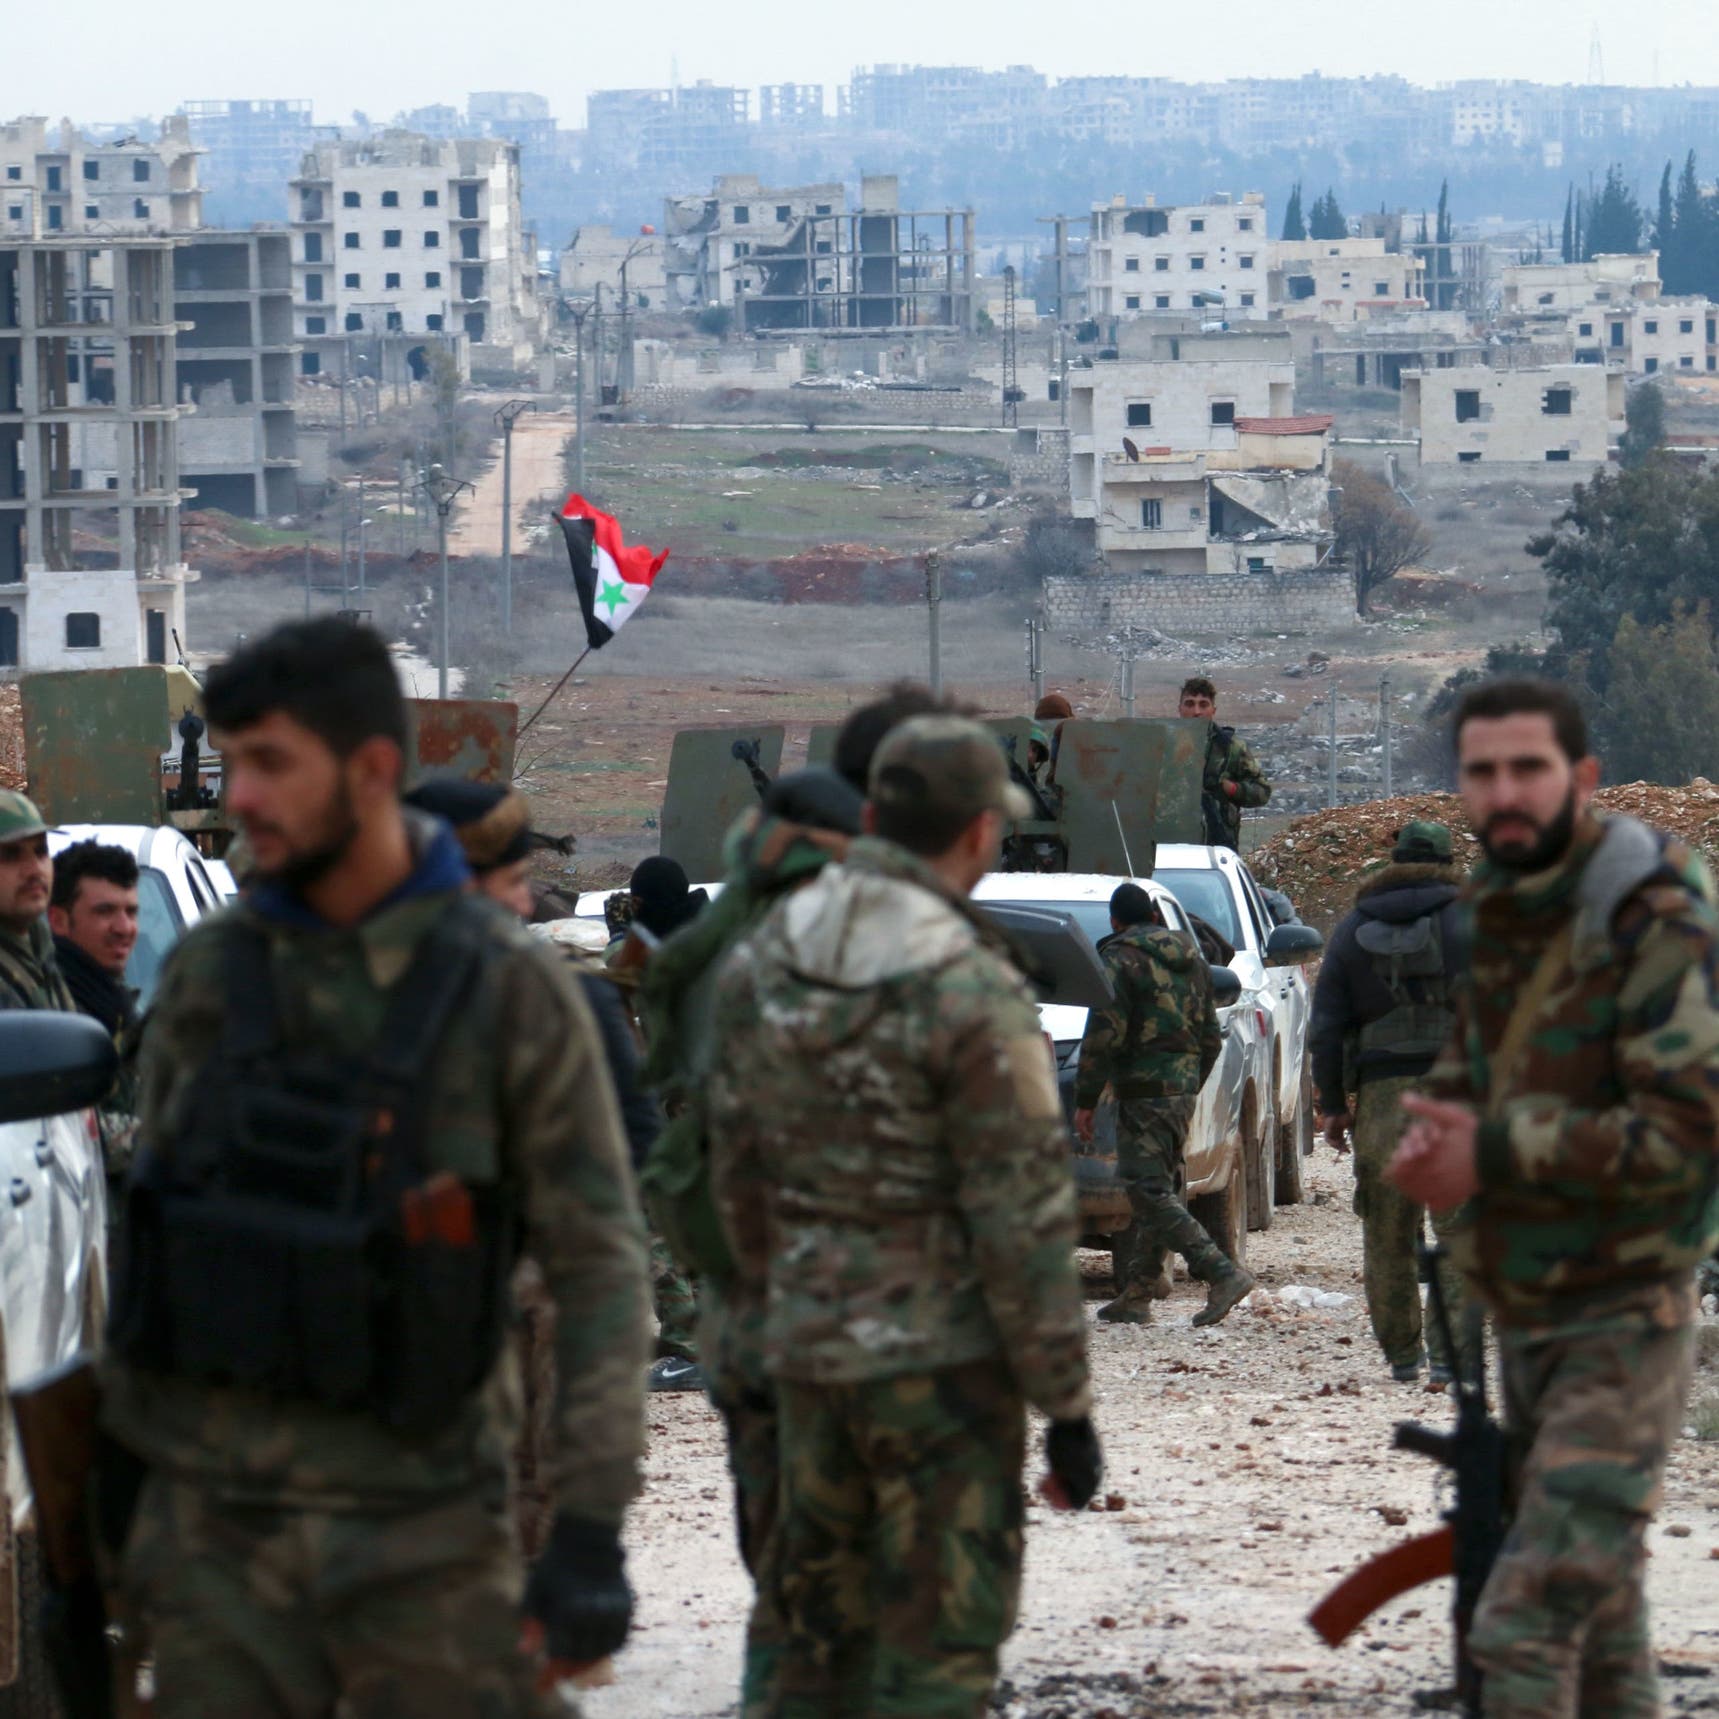 للضغط على "الأسايش".. قوات النظام تقطع الطرقات بأحياء حلب